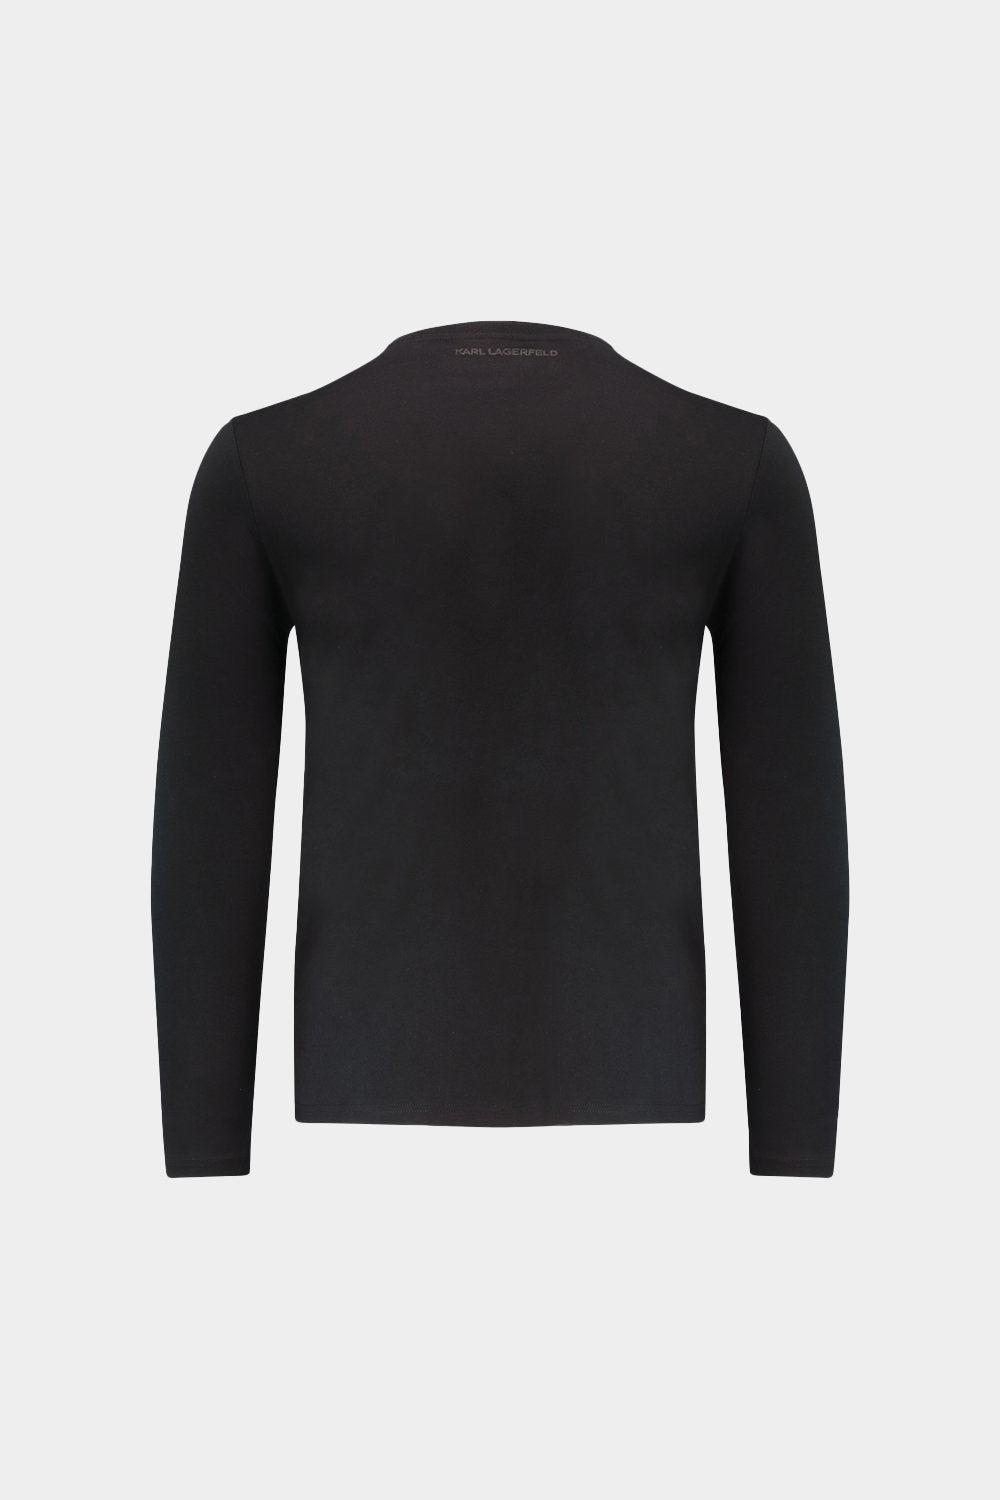 חולצת טי שירט שרוול ארוך לגברים לוגו ארוג ענק KARL LAGERFELD Vendome online | ונדום .